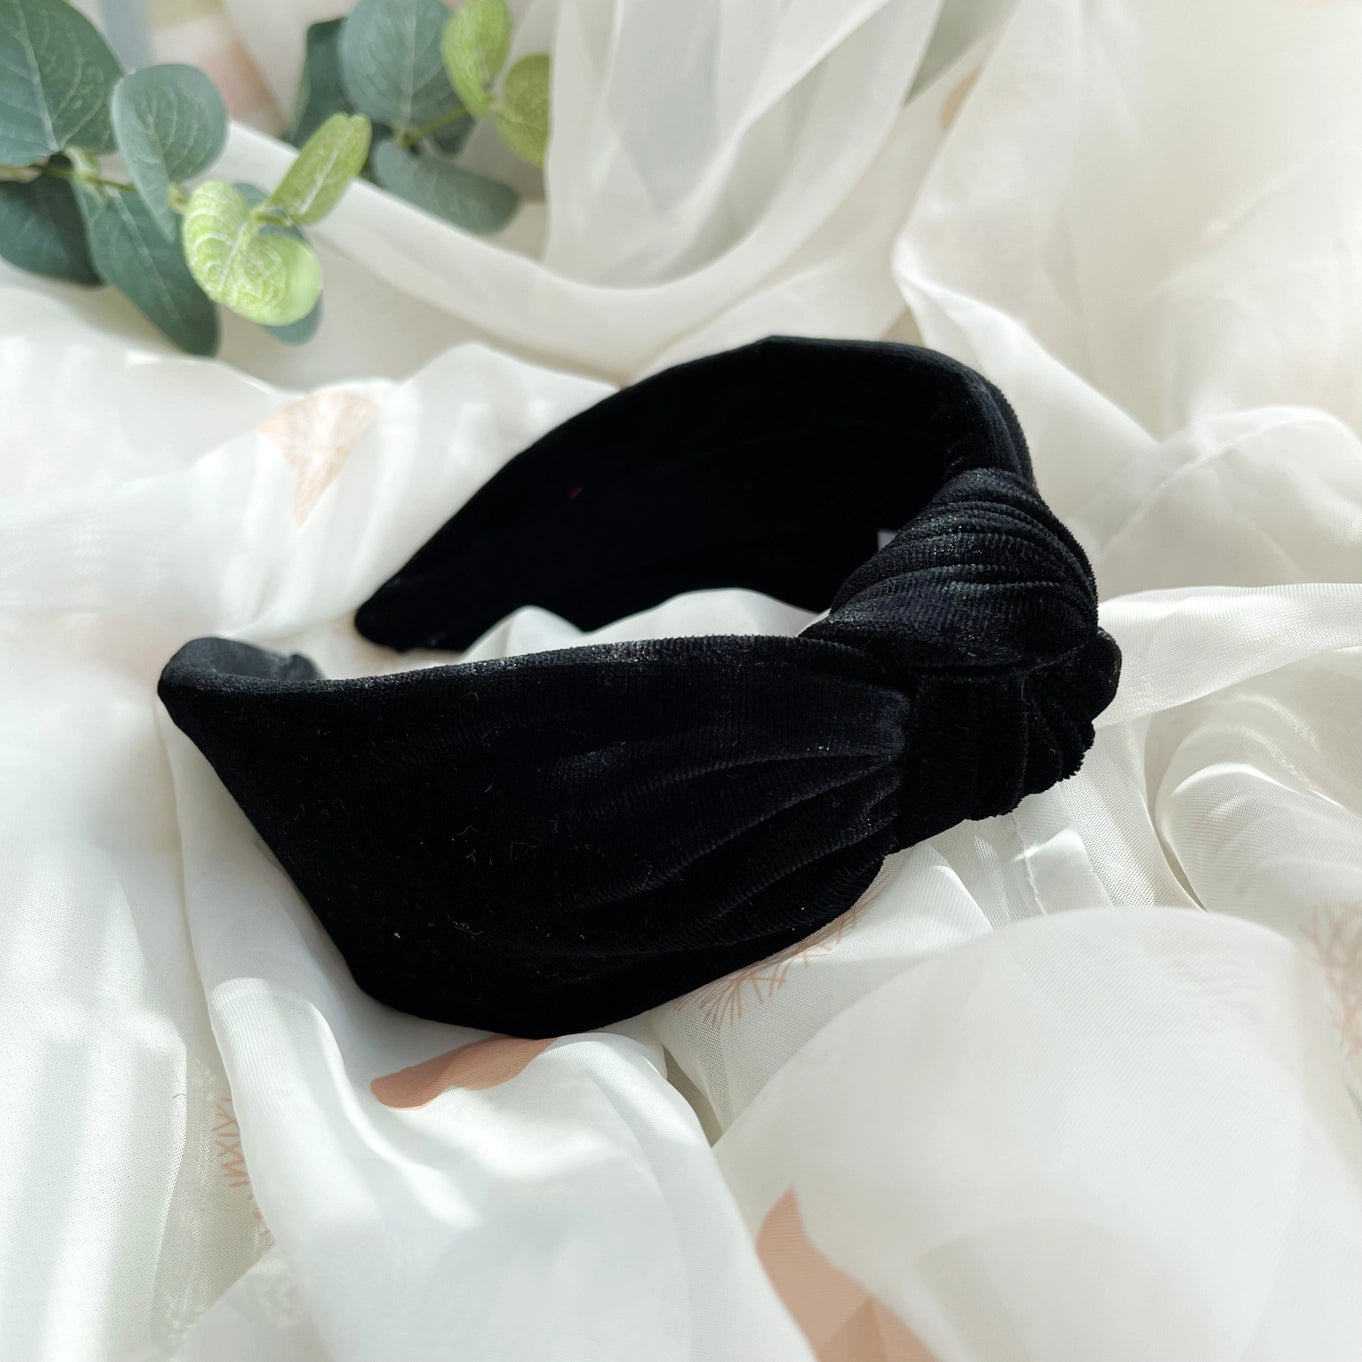 Top Knot Headband - Black Velvet By Nine Design